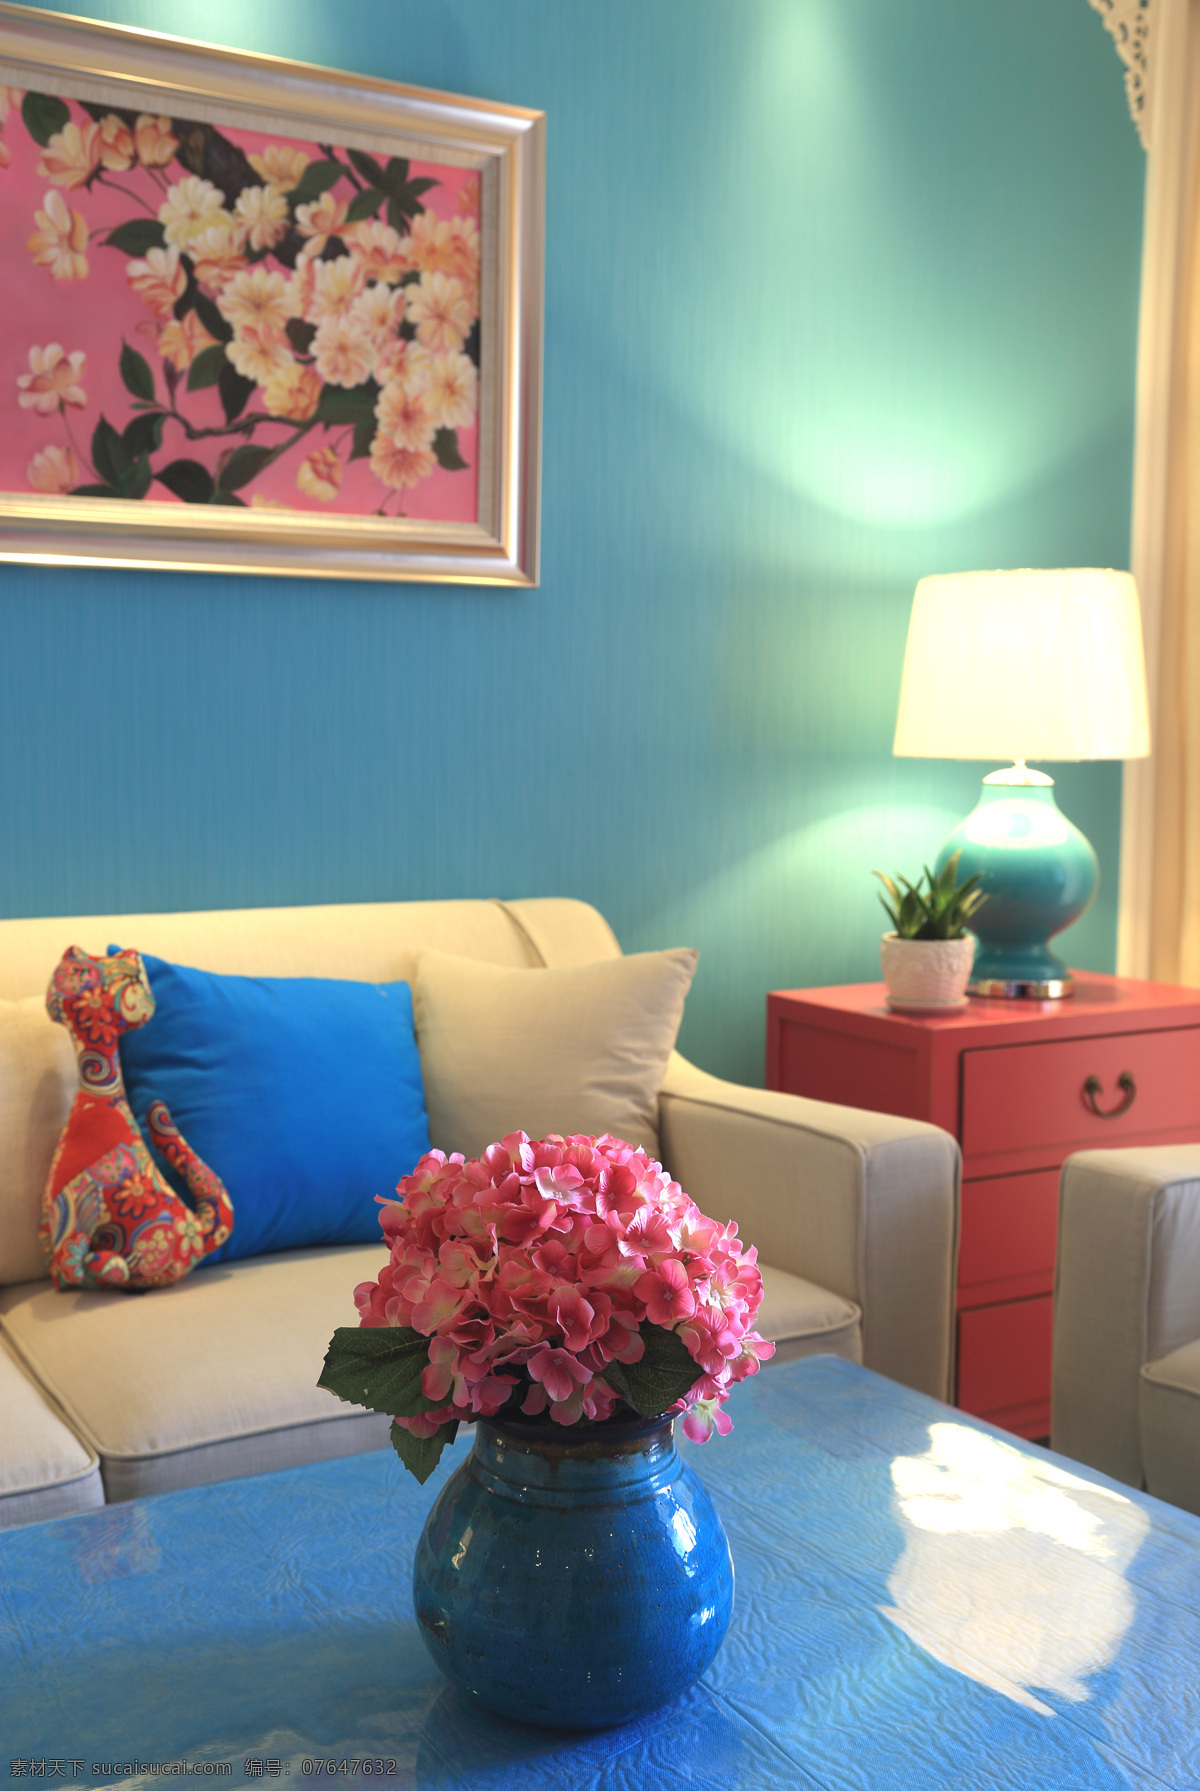 室内 鲜花 家装 效果图 背景墙 沙发 抱枕 台灯 花朵挂画 蓝色桌子 红色柜子 绿盆栽